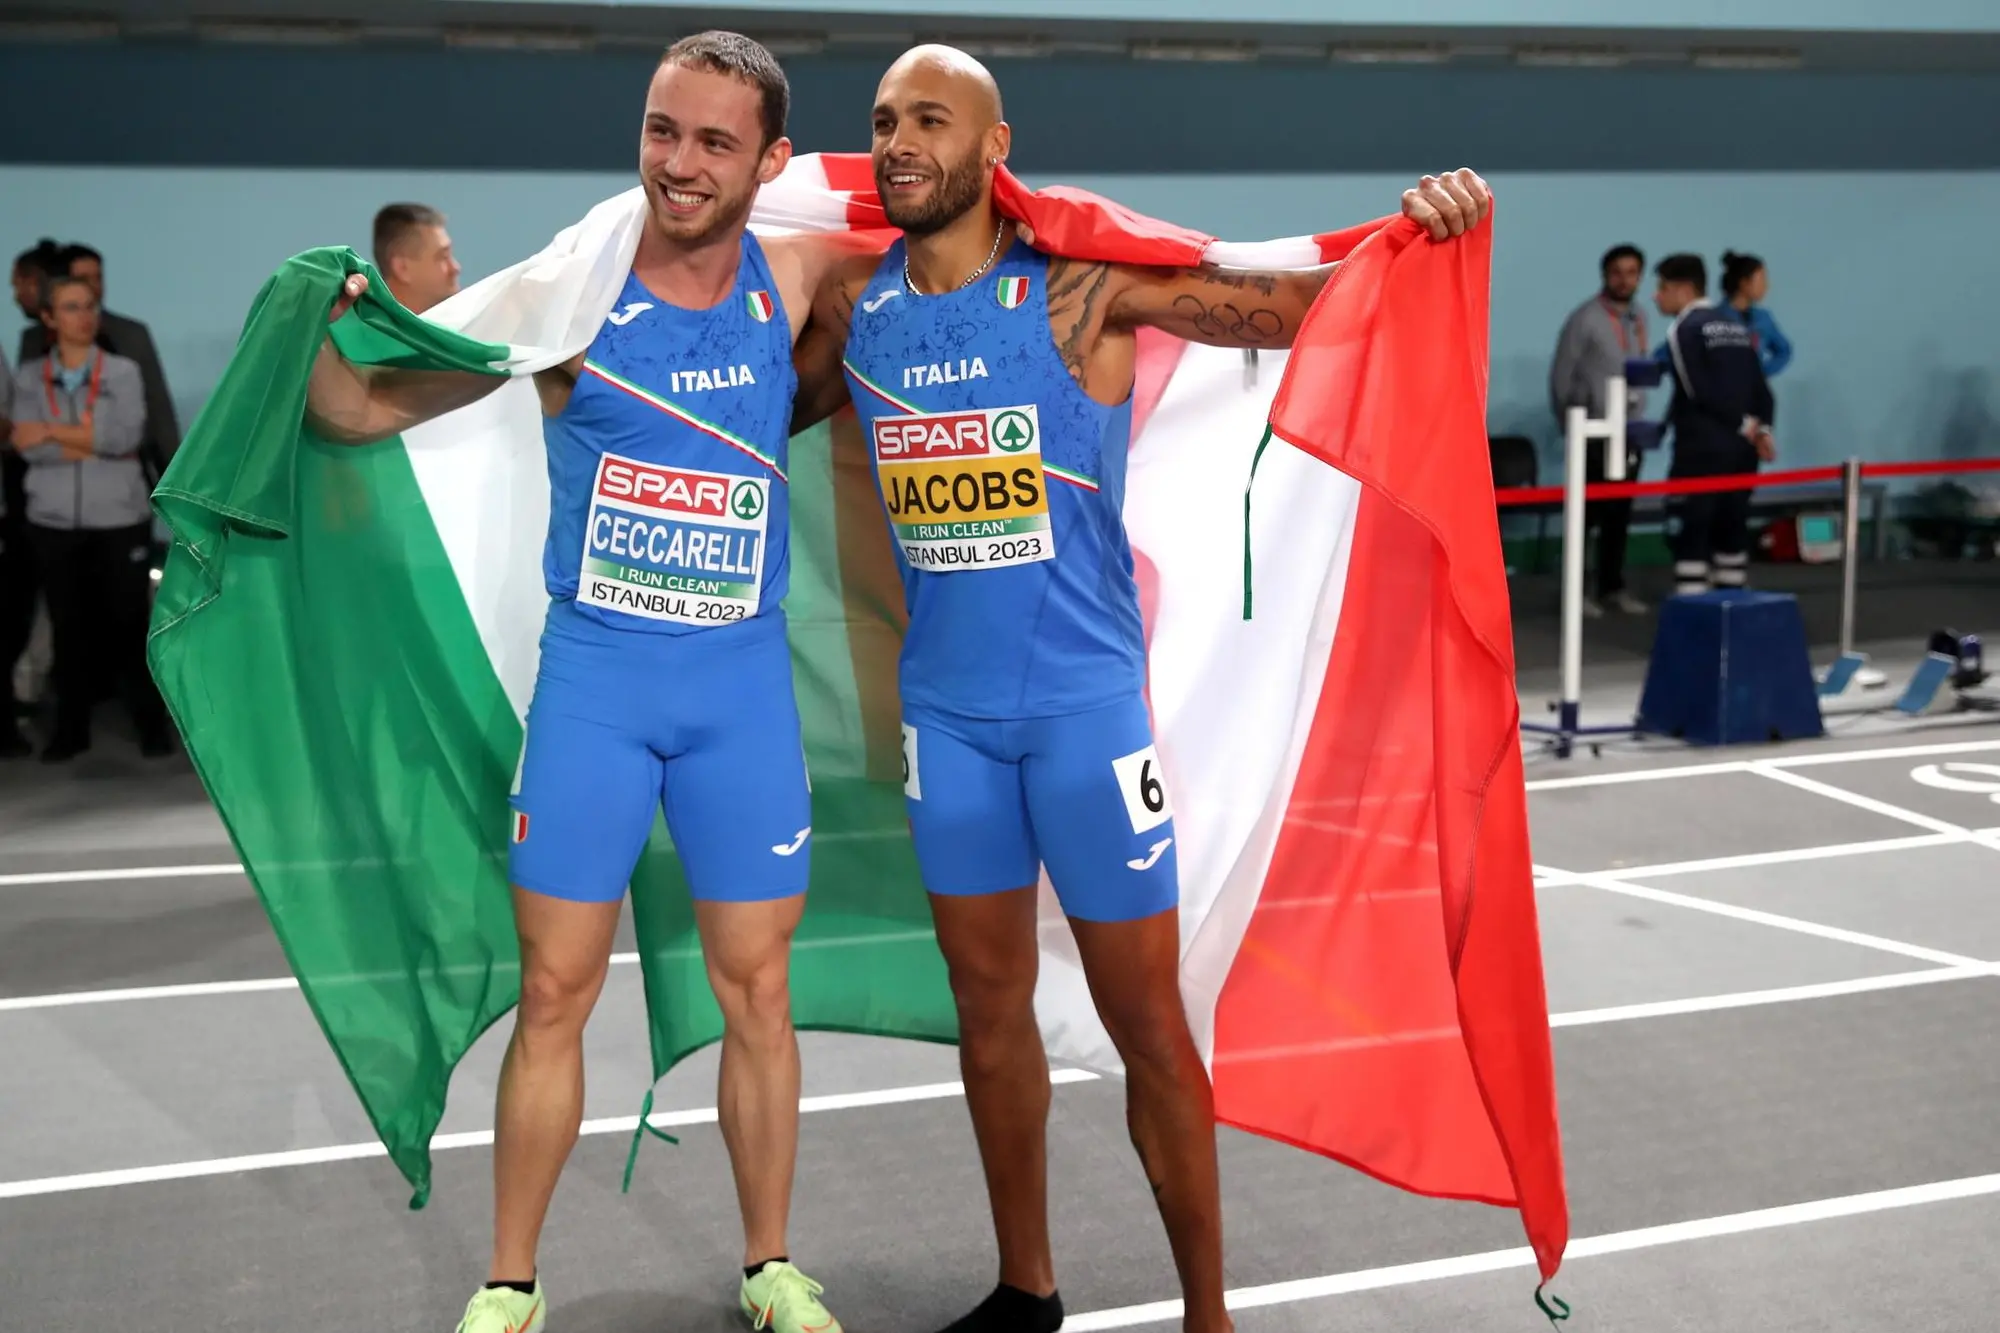 Ceccarelli e Jacobs all'arrivo con la bandiera italiana (Foto Ansa)